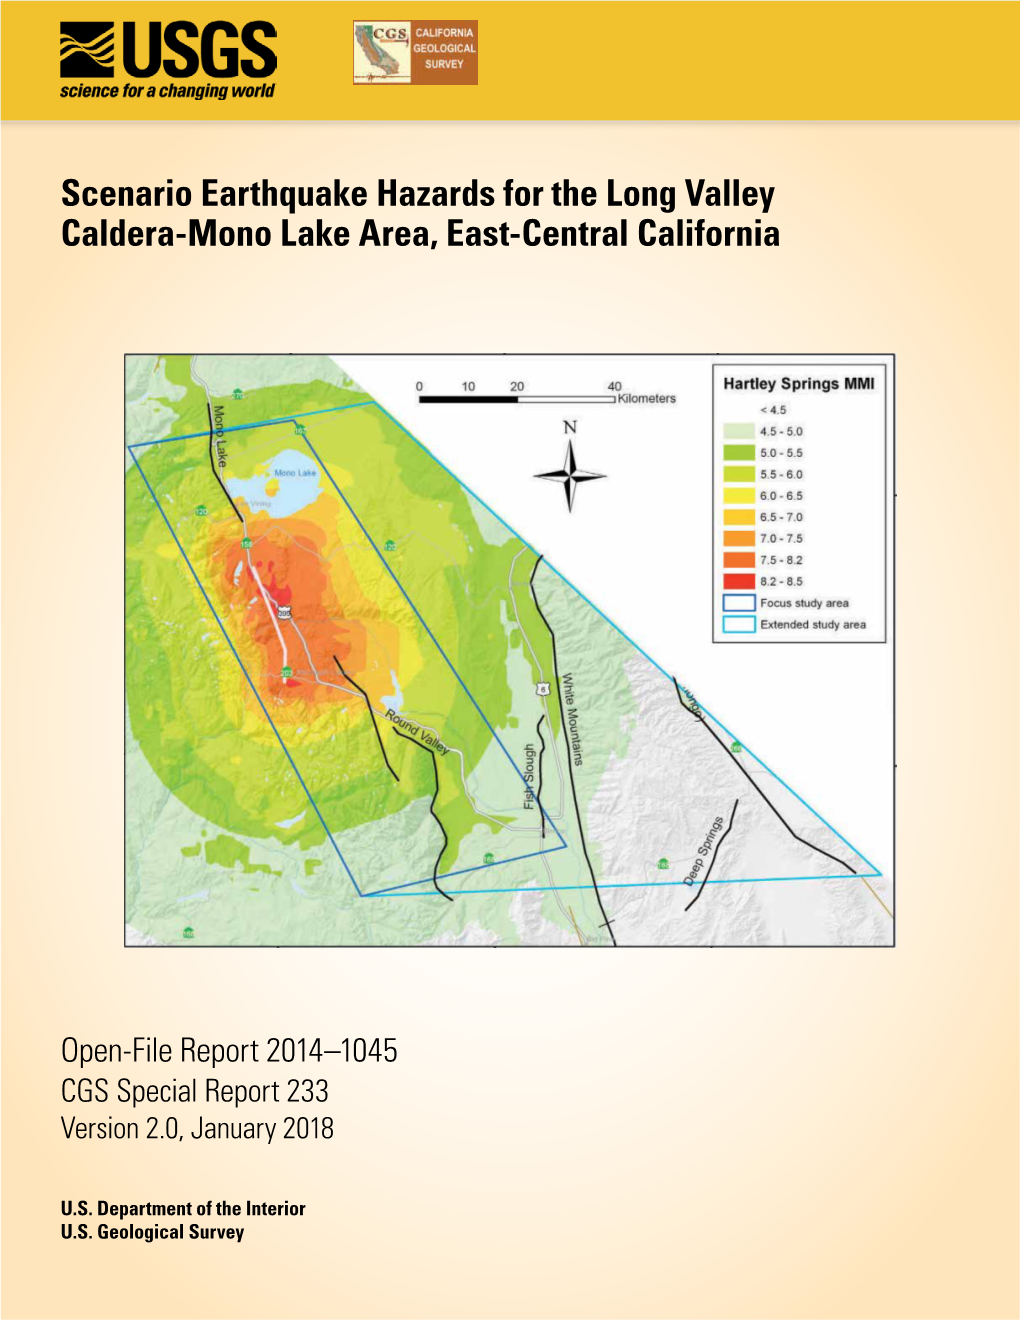 Scenario Earthquake Hazards for the Long Valley Caldera-Mono Lake Area, East-Central California